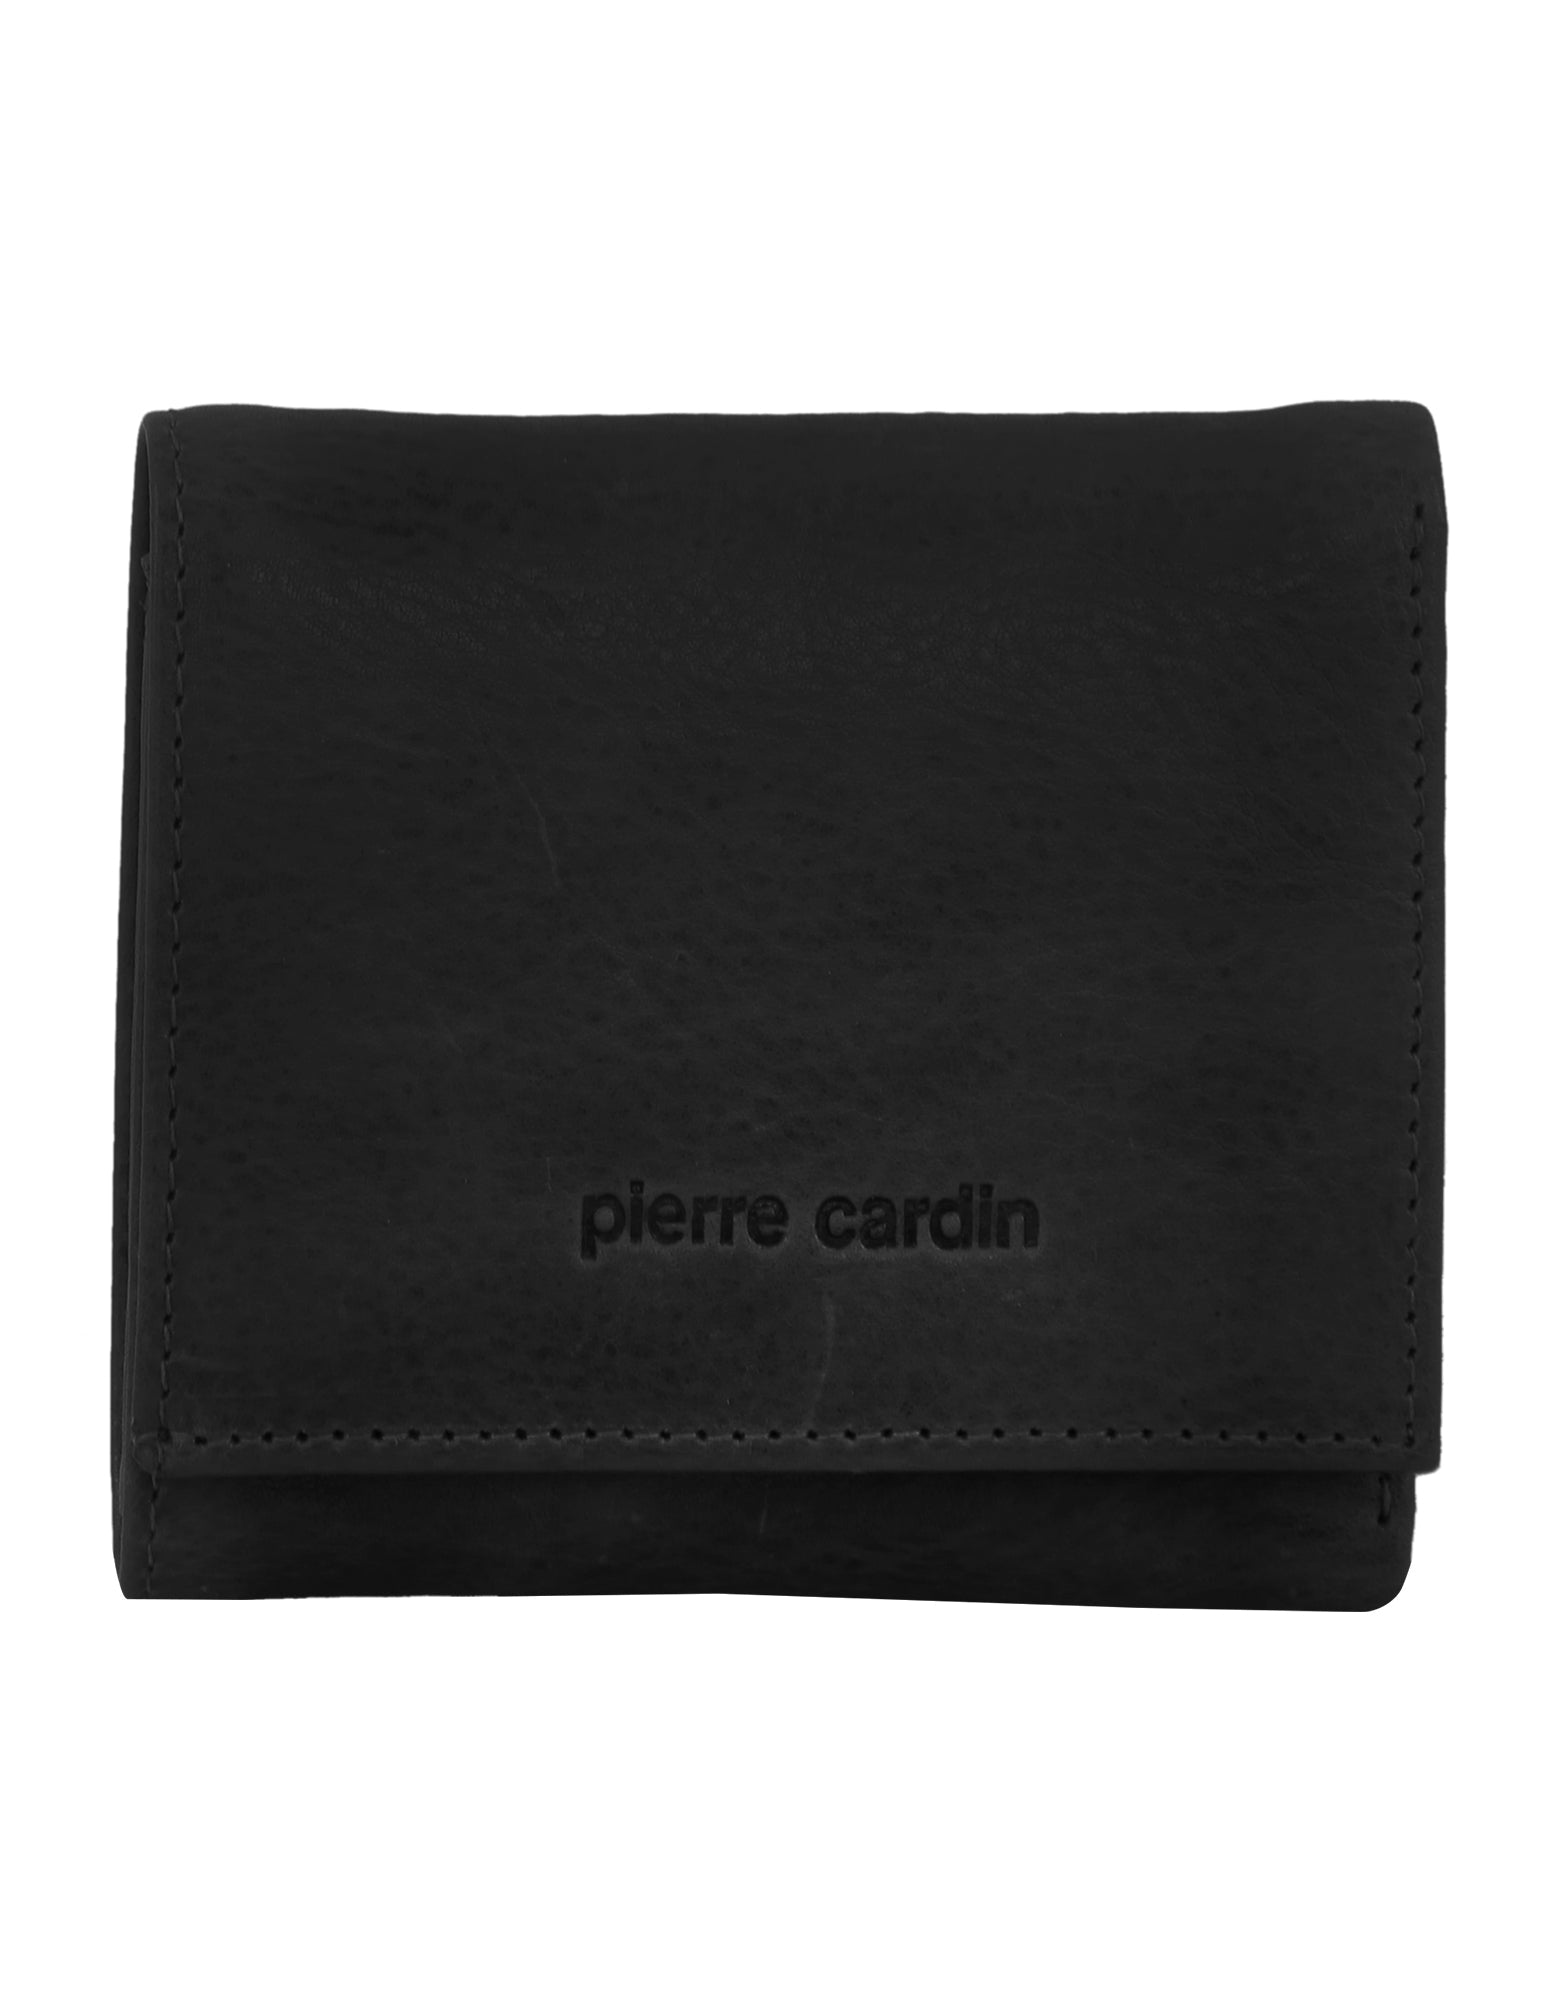 Pierre Cardin Leather Men's Tri-Fold Wallet in Cognac